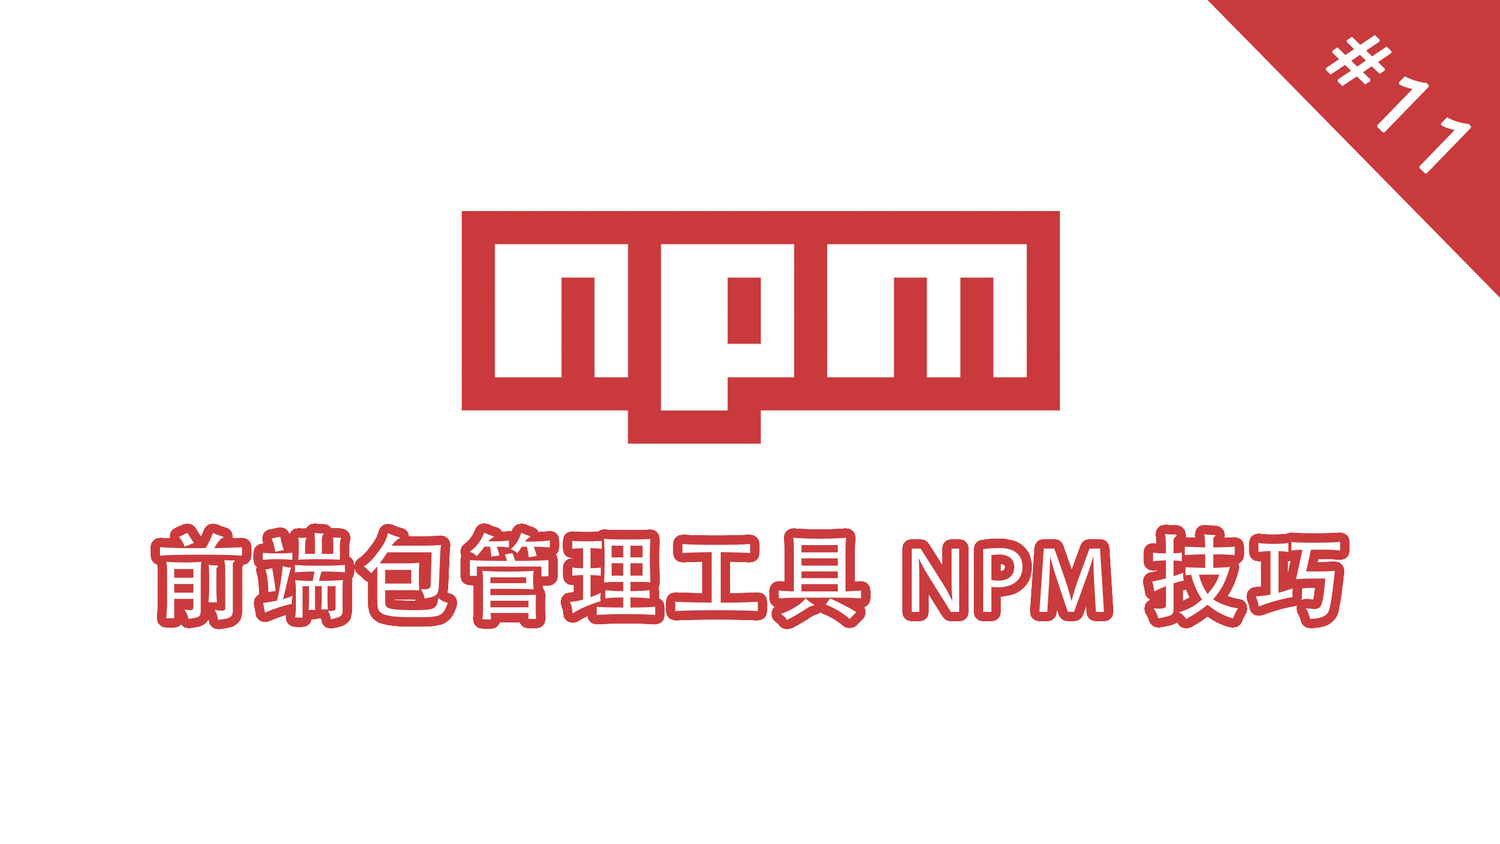 npm 脚本命令